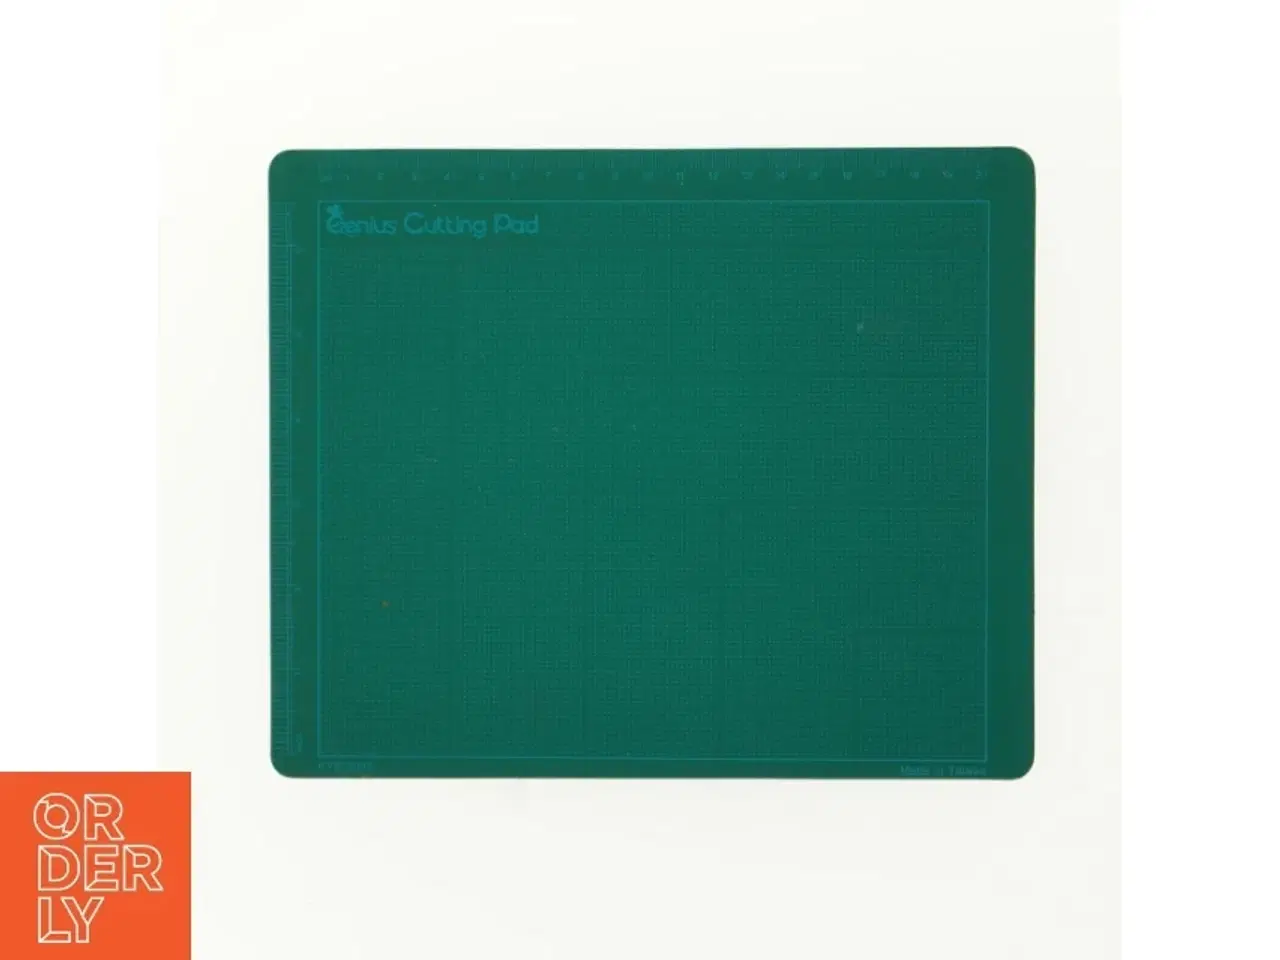 Billede 1 - Cutting pad og mousepad fra Genius (str. 22 x 18)